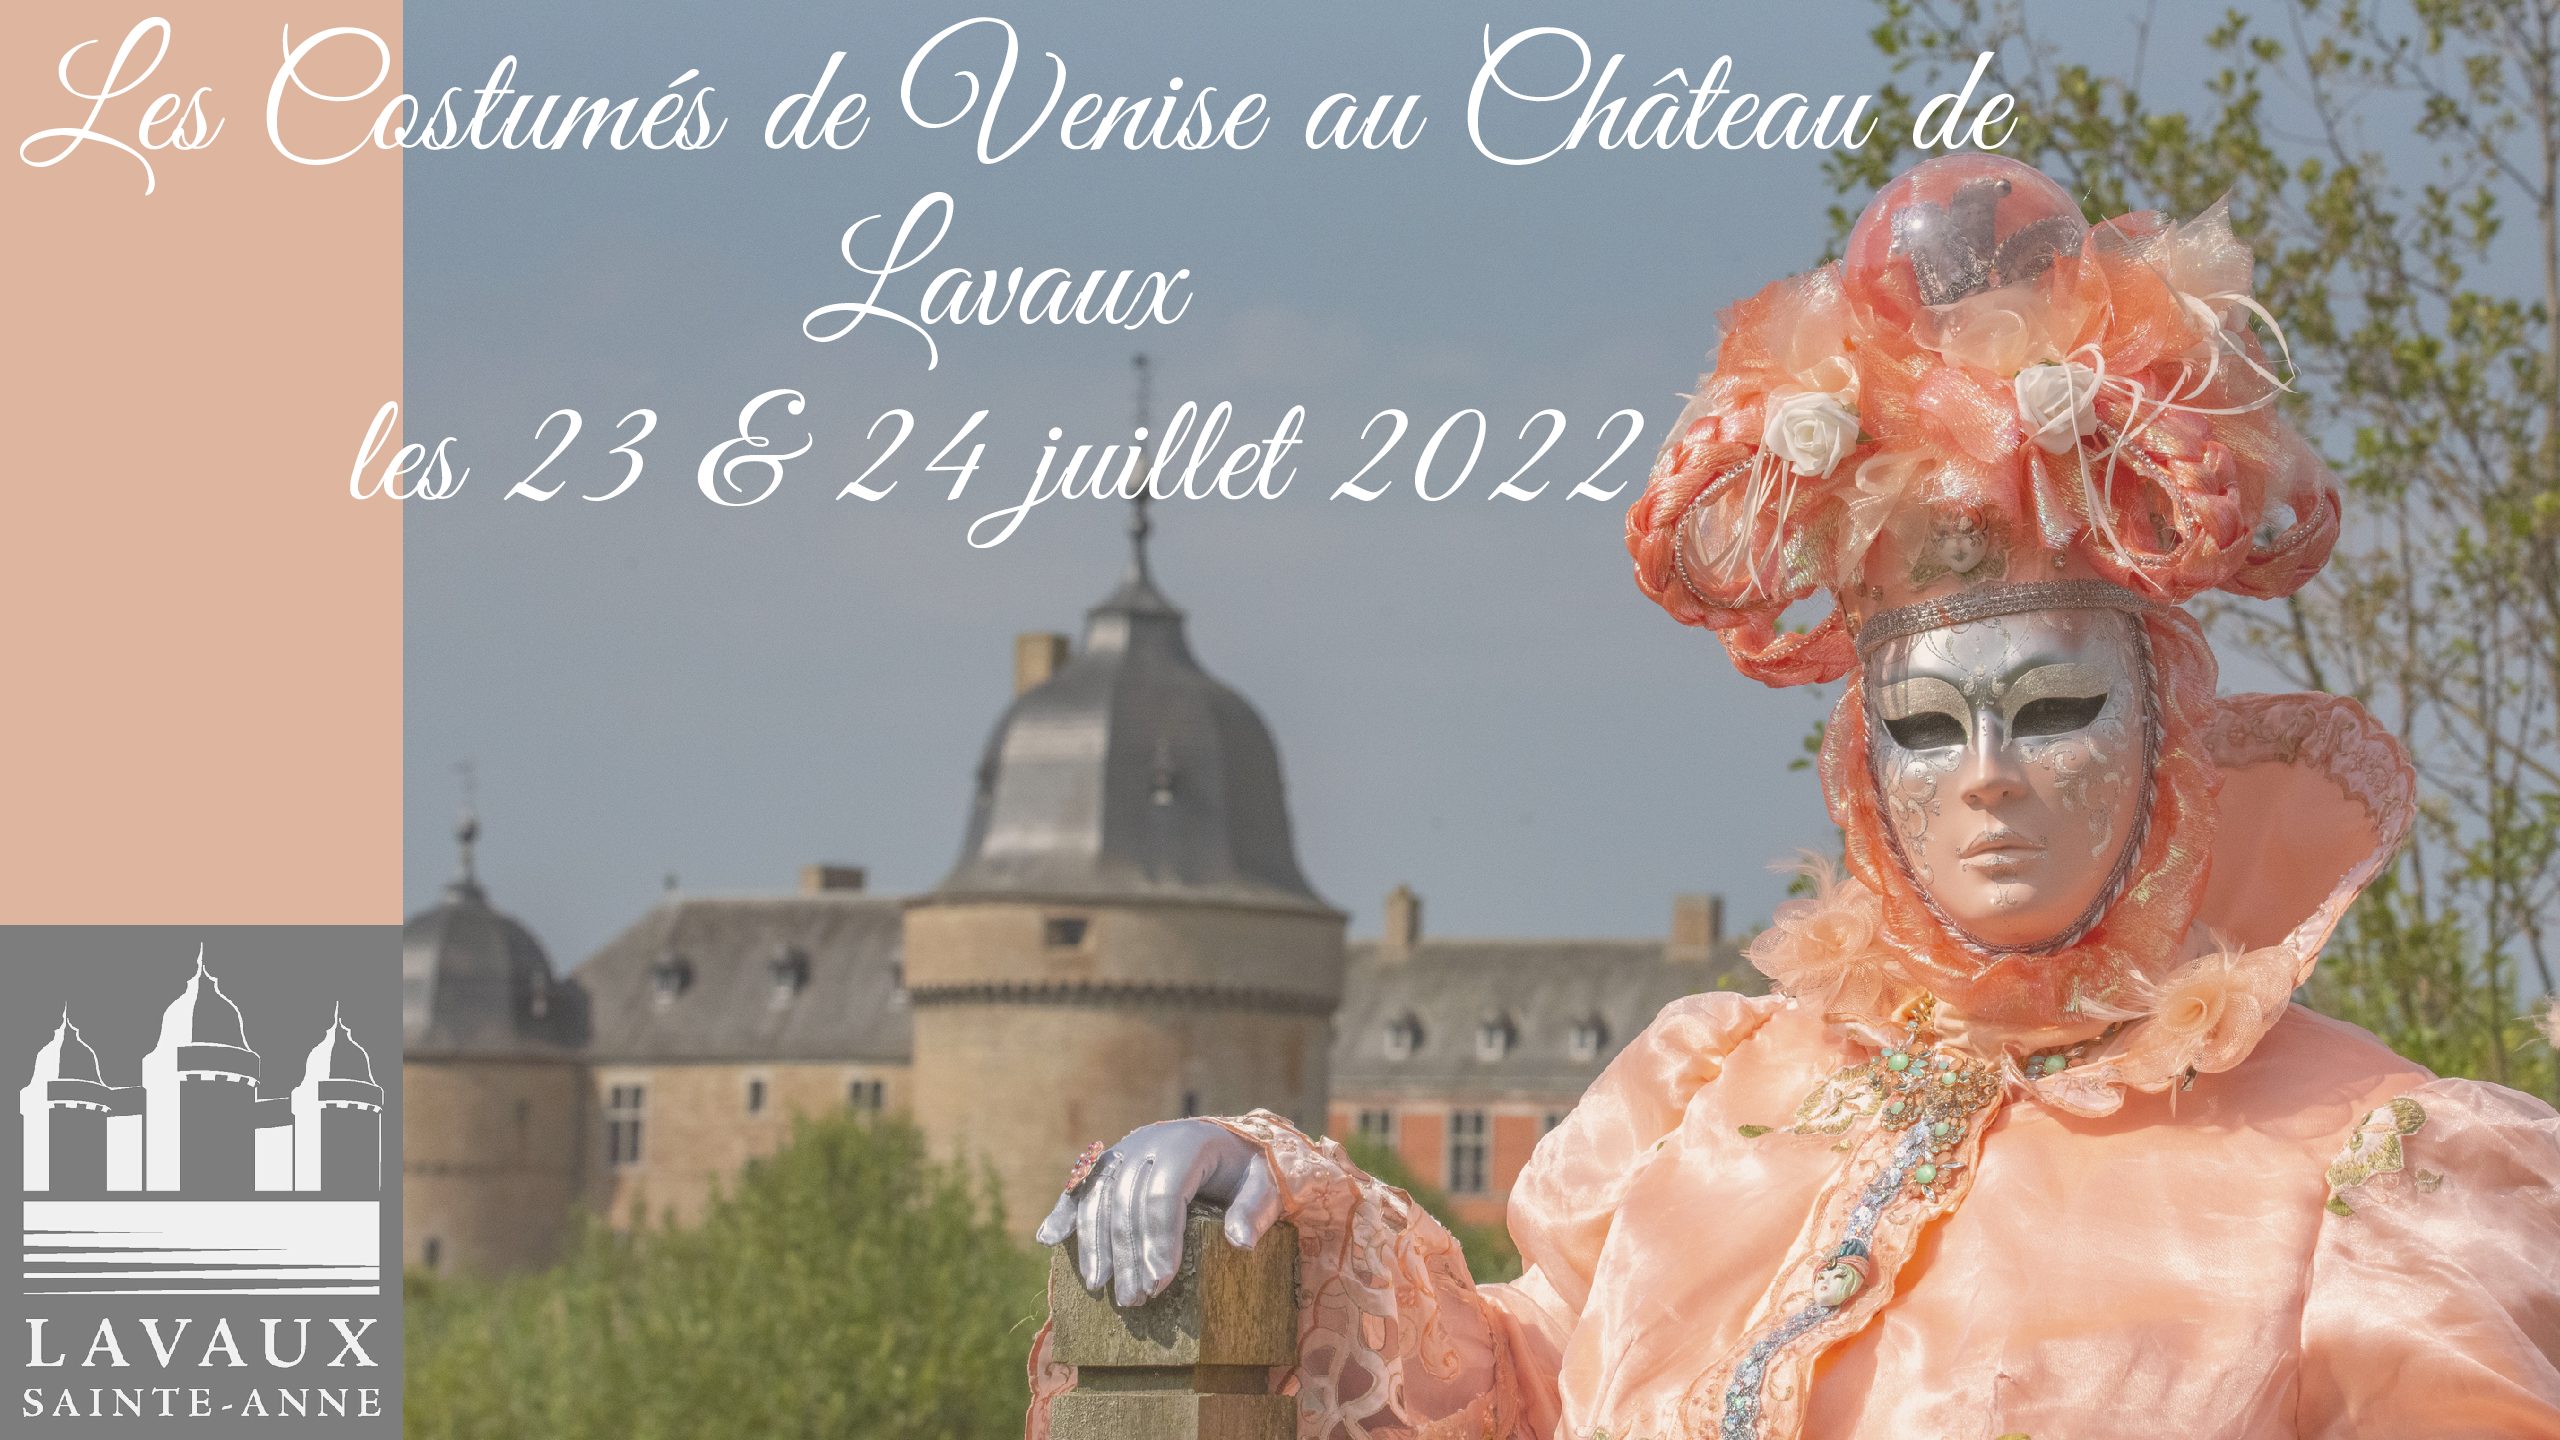 Les Costumés de Venise au Château les 23 & 24 juillet 2022